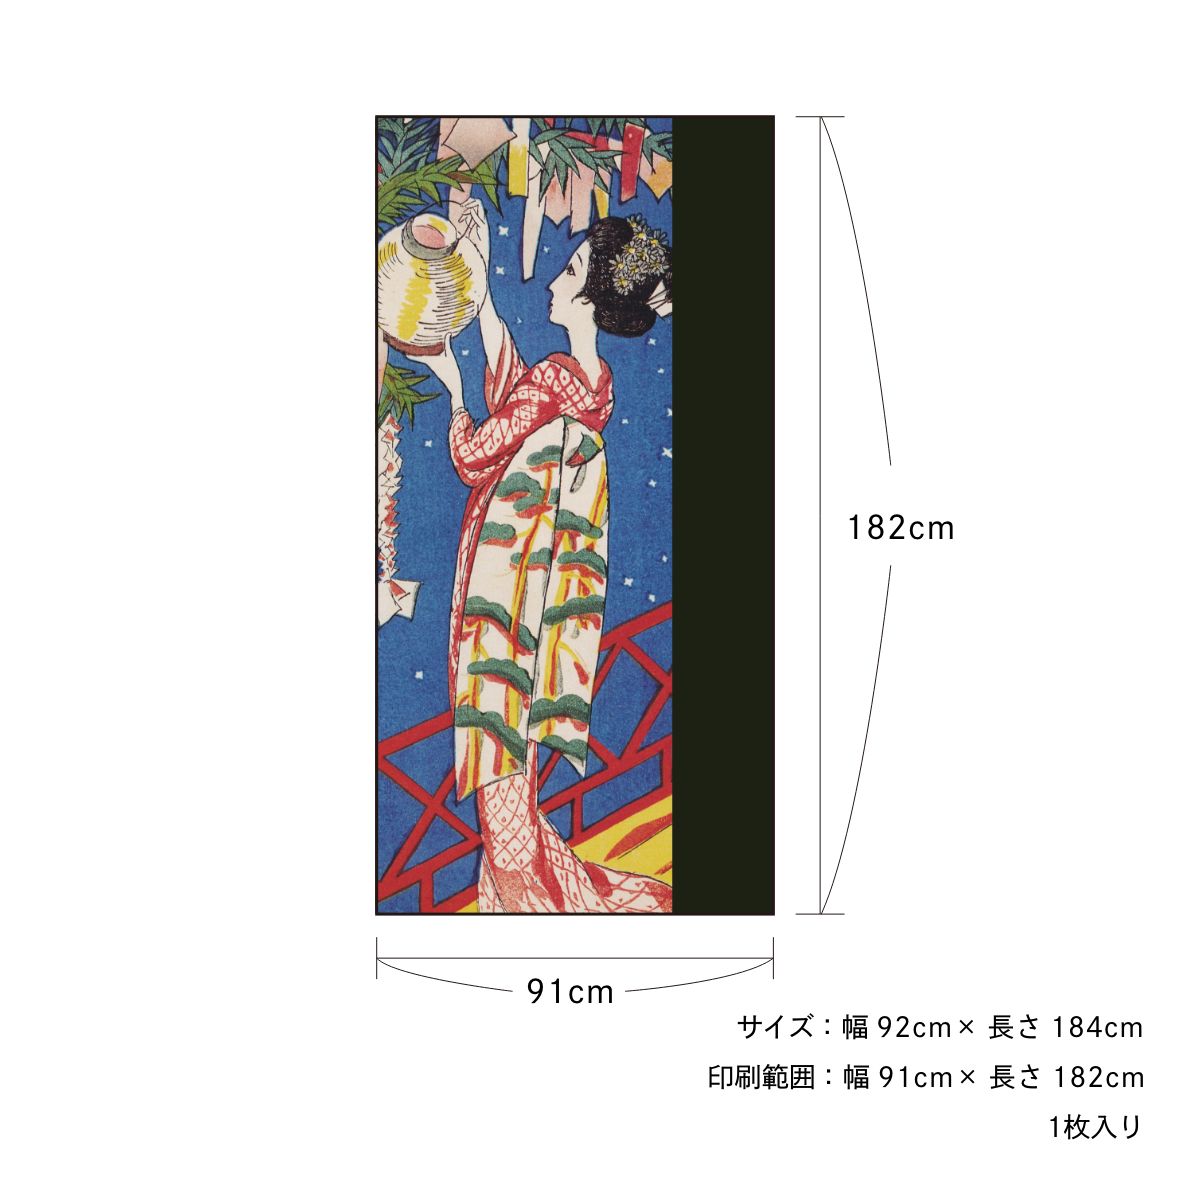 日本の名画 ふすま紙 竹久夢二 星合 1枚入り 水で貼るタイプ 幅91cm×長さ182cm 襖紙 アサヒペン JTY_006F